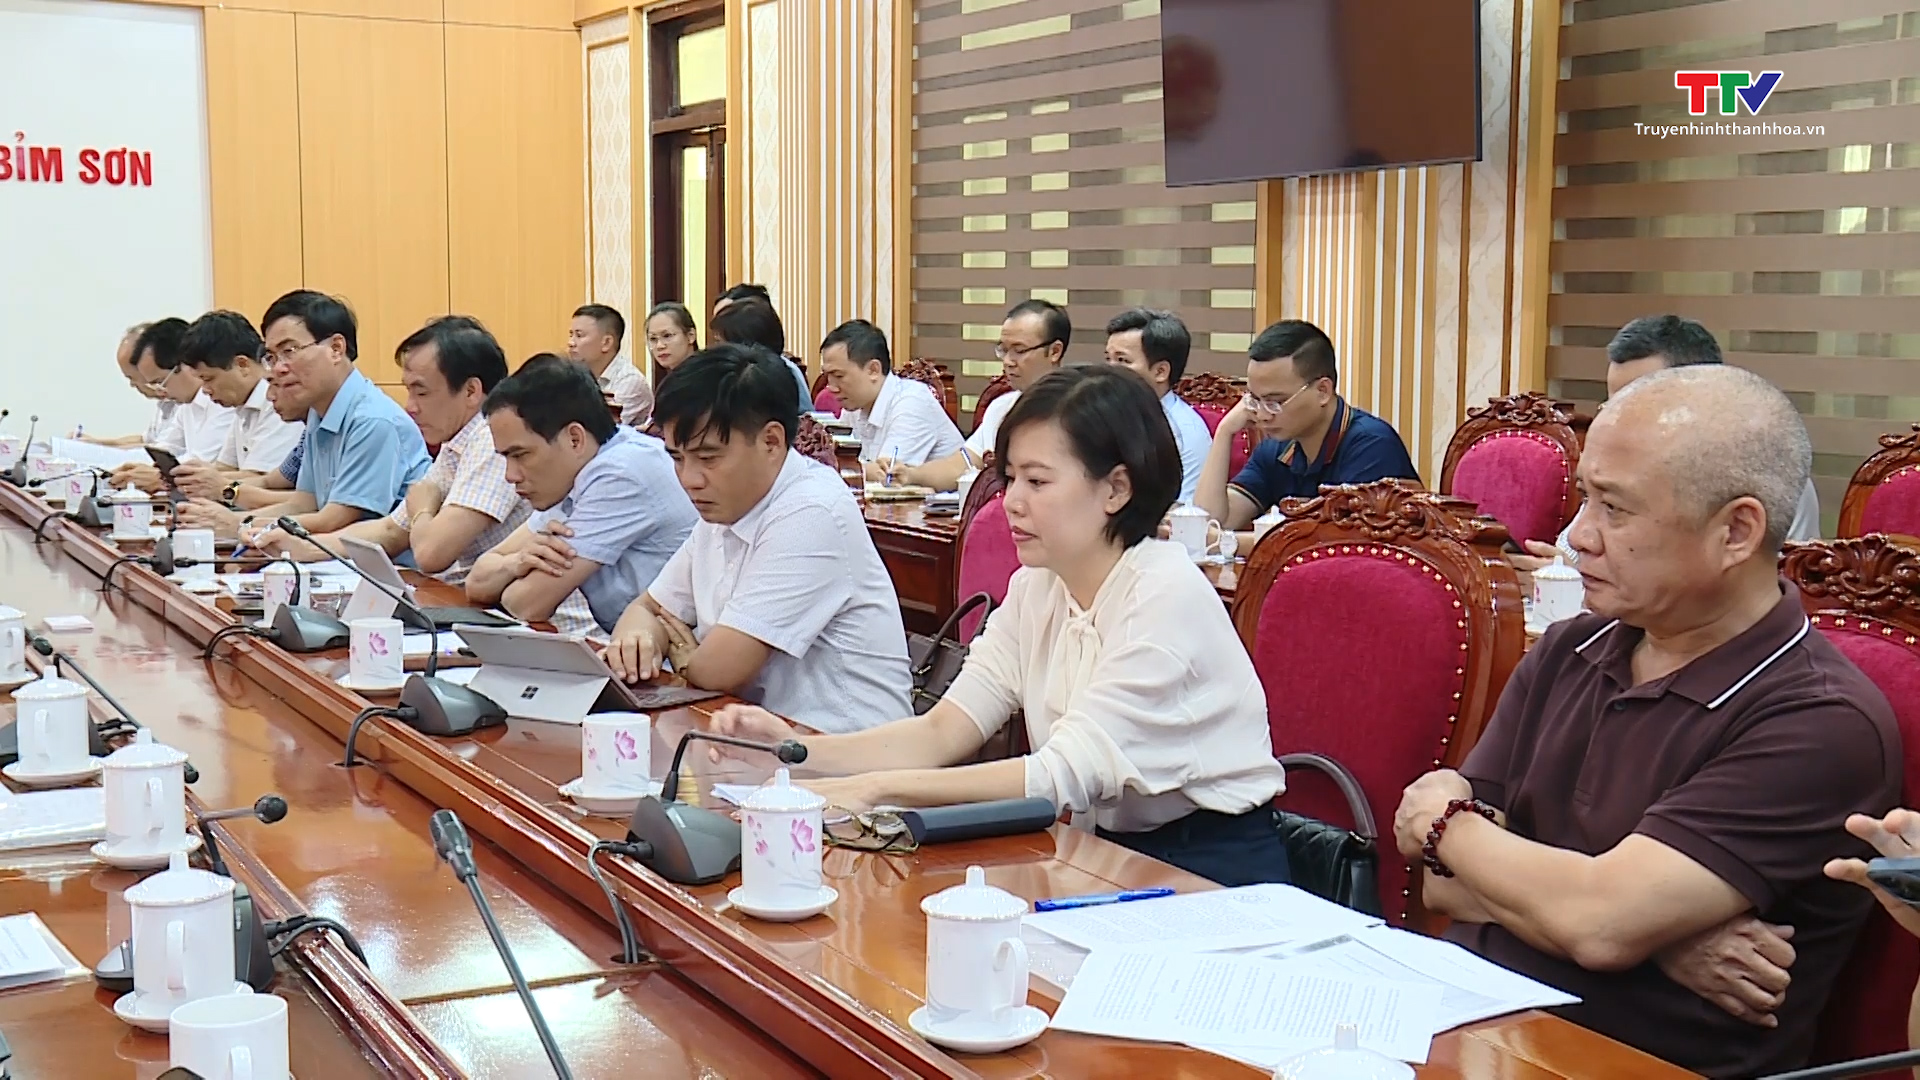 Phó Chủ tịch Thường trực Ủy ban nhân dân tỉnh Nguyễn Văn Thi kiểm tra các dự án tại Khu công nghiệp Bỉm Sơn - Ảnh 6.